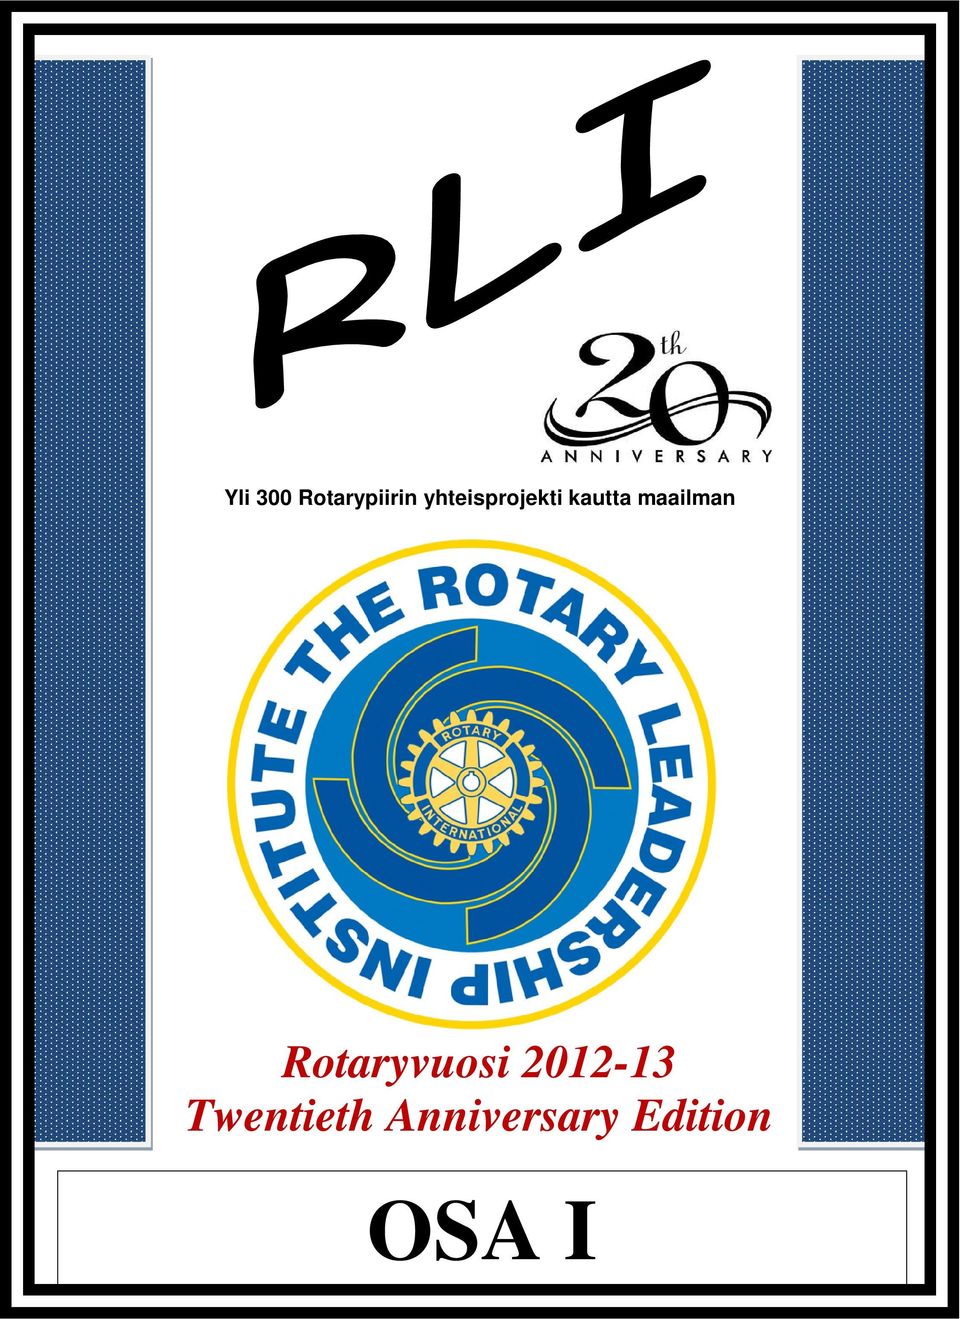 maailman Rotaryvuosi